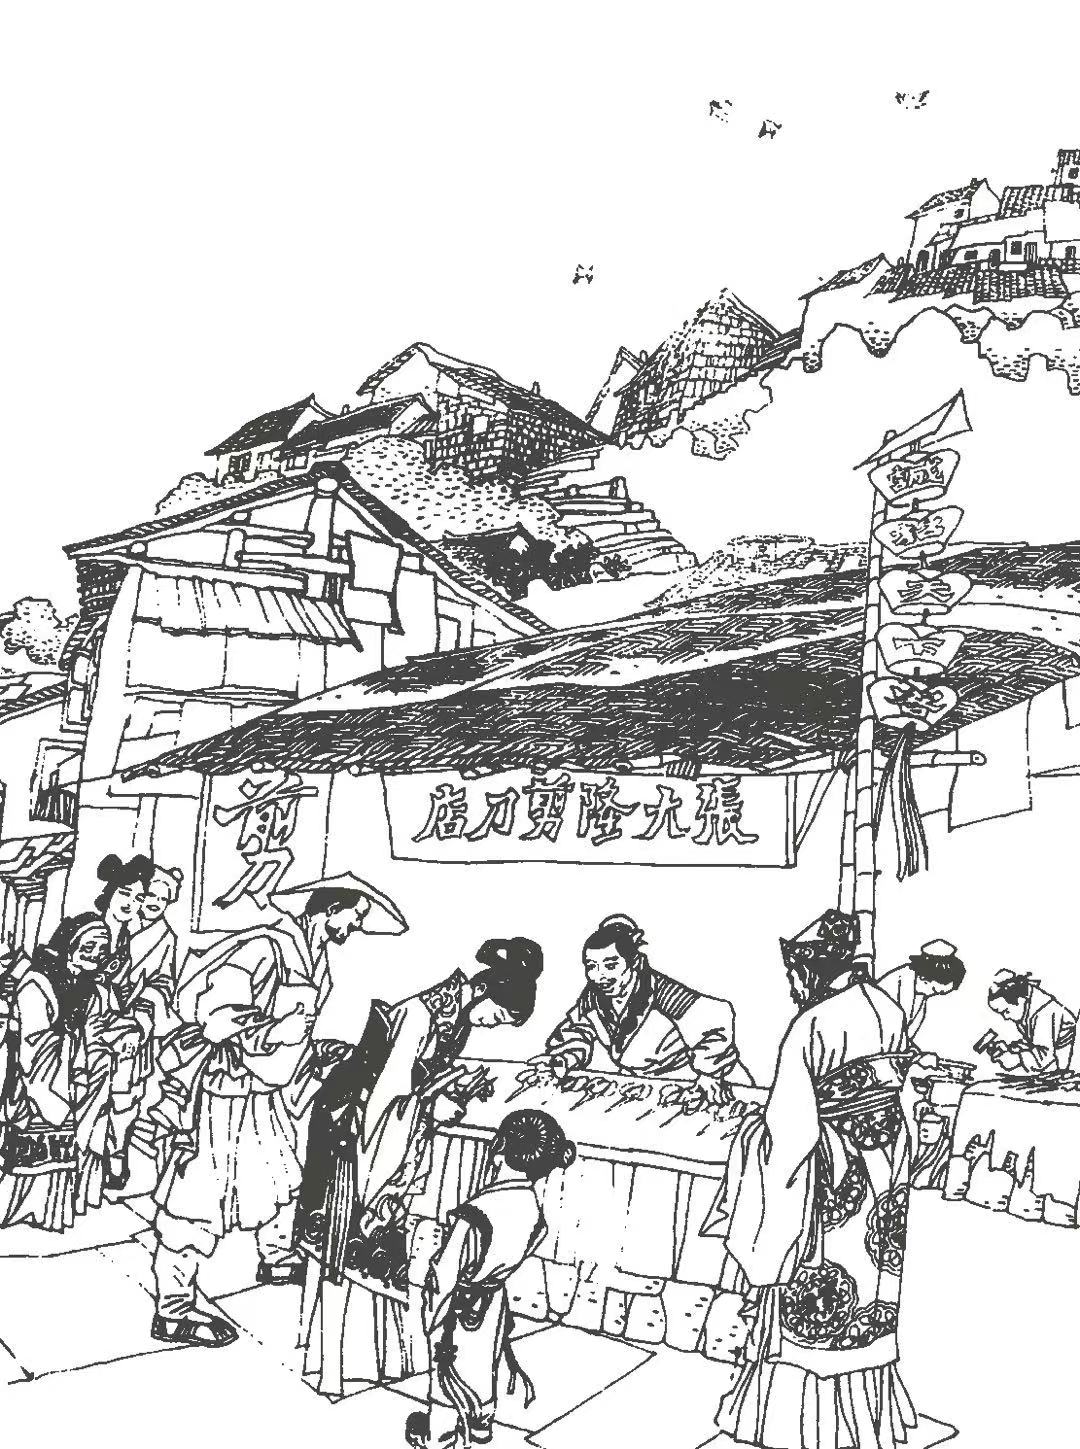 Initiation of "Zhang Dalong": during Wanli Period in the Ming Dynasty, Zhang Sijia opened a scissors shop in Yi County, Huizhou, with the name of “Zhang Dalong”.